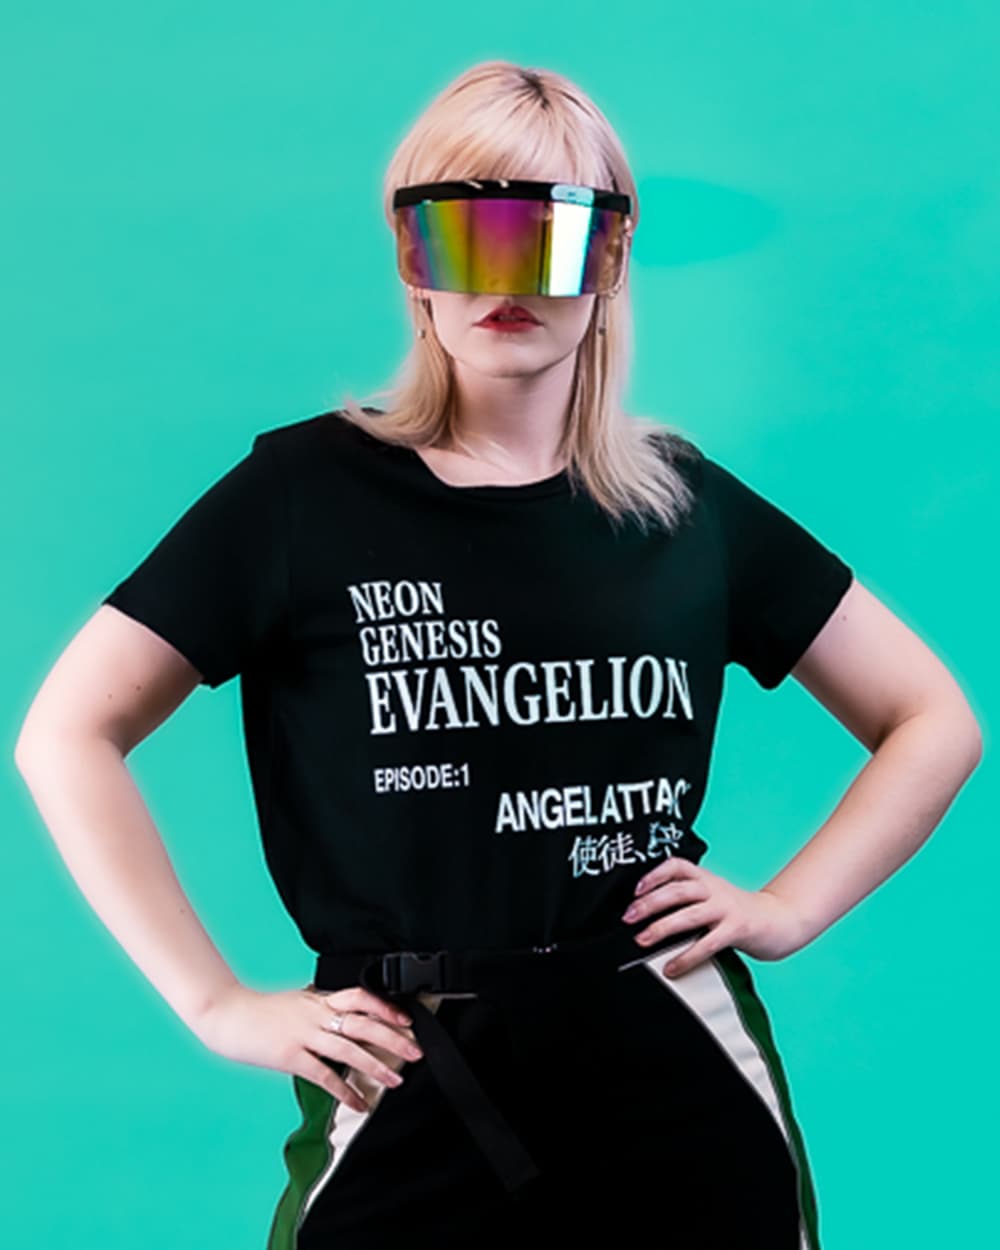 Evangelion Episode 1 T-Shirt Europe Online